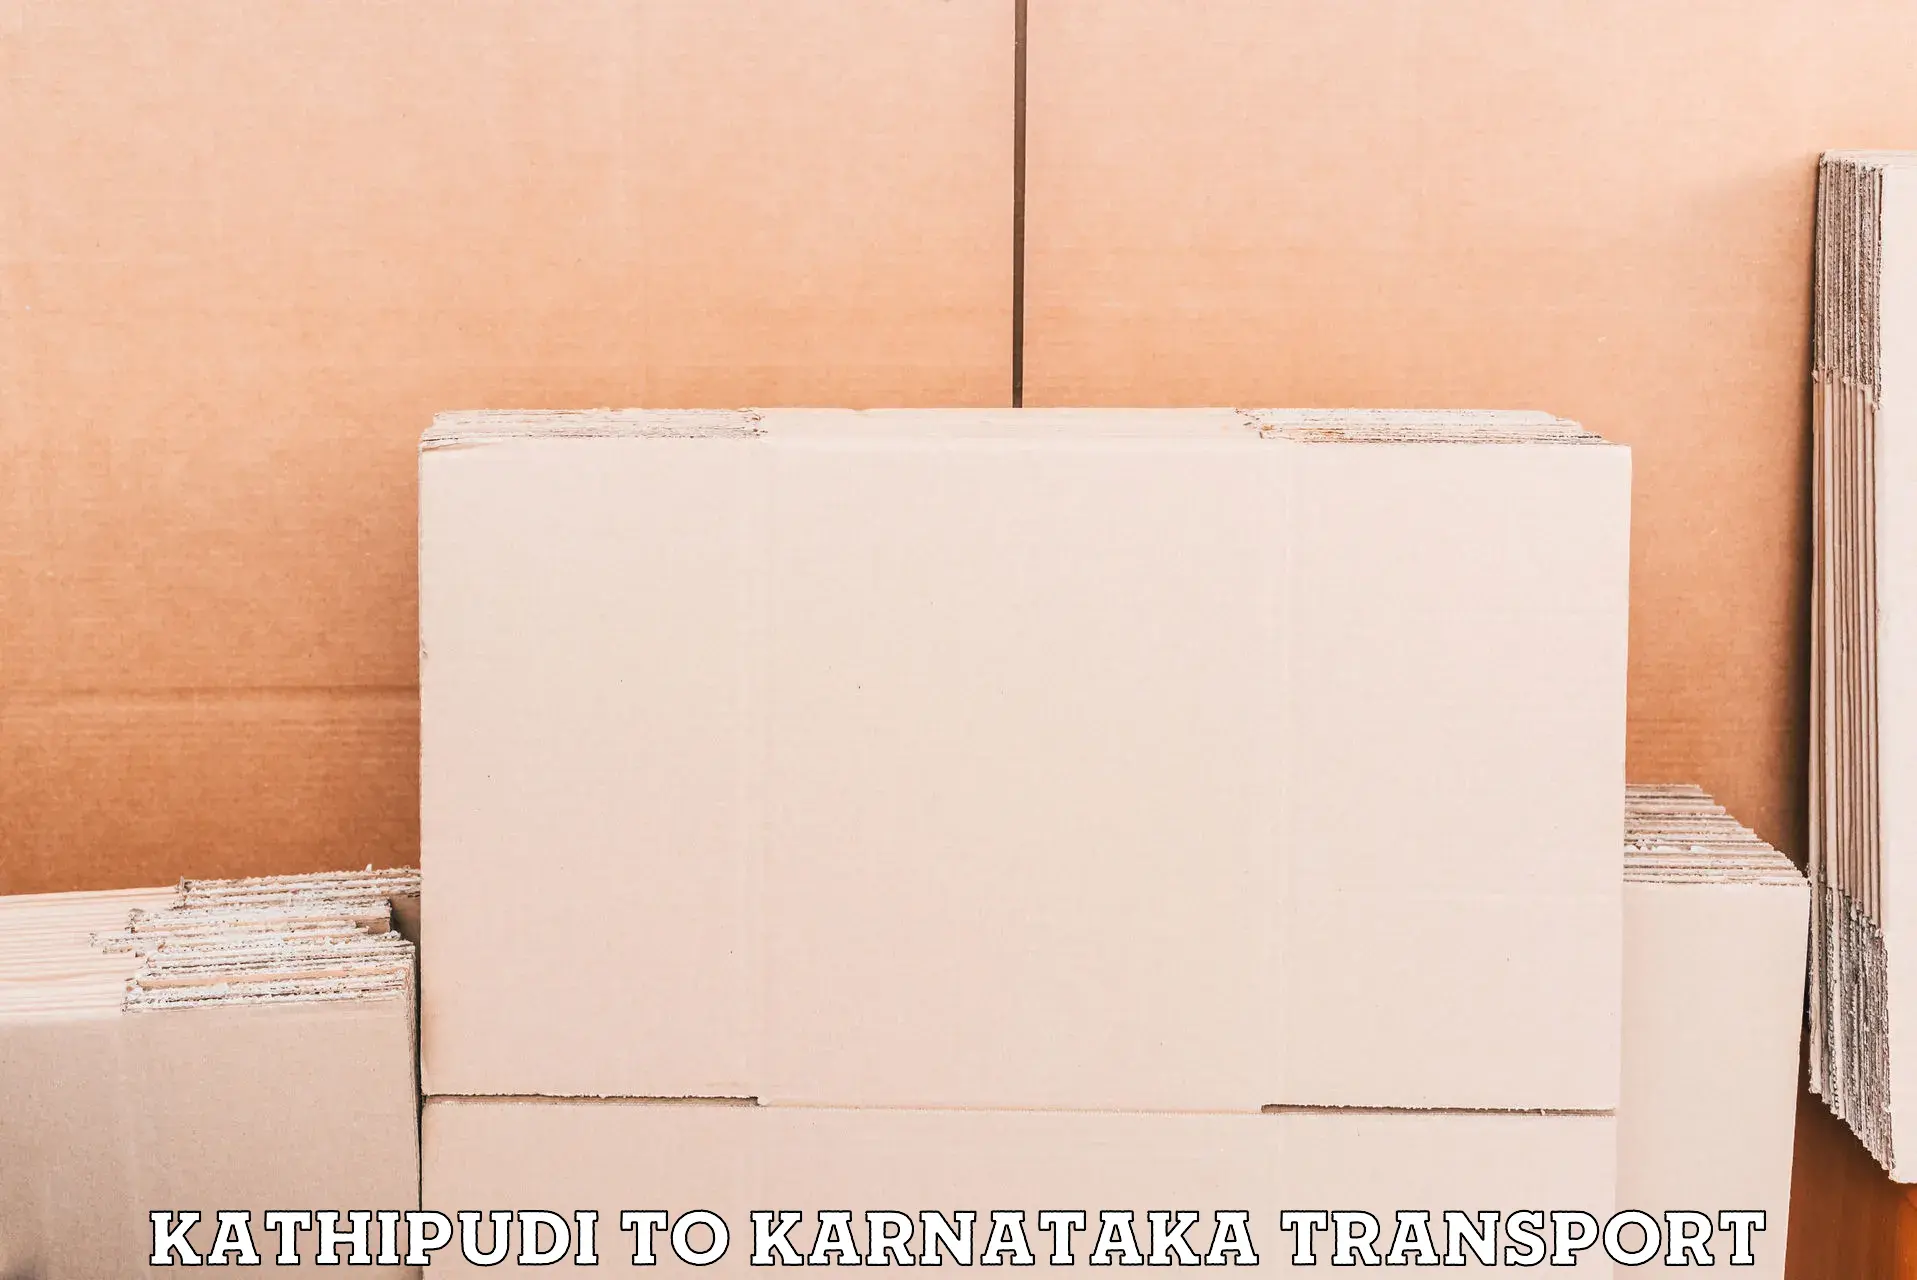 Online transport Kathipudi to Karnataka